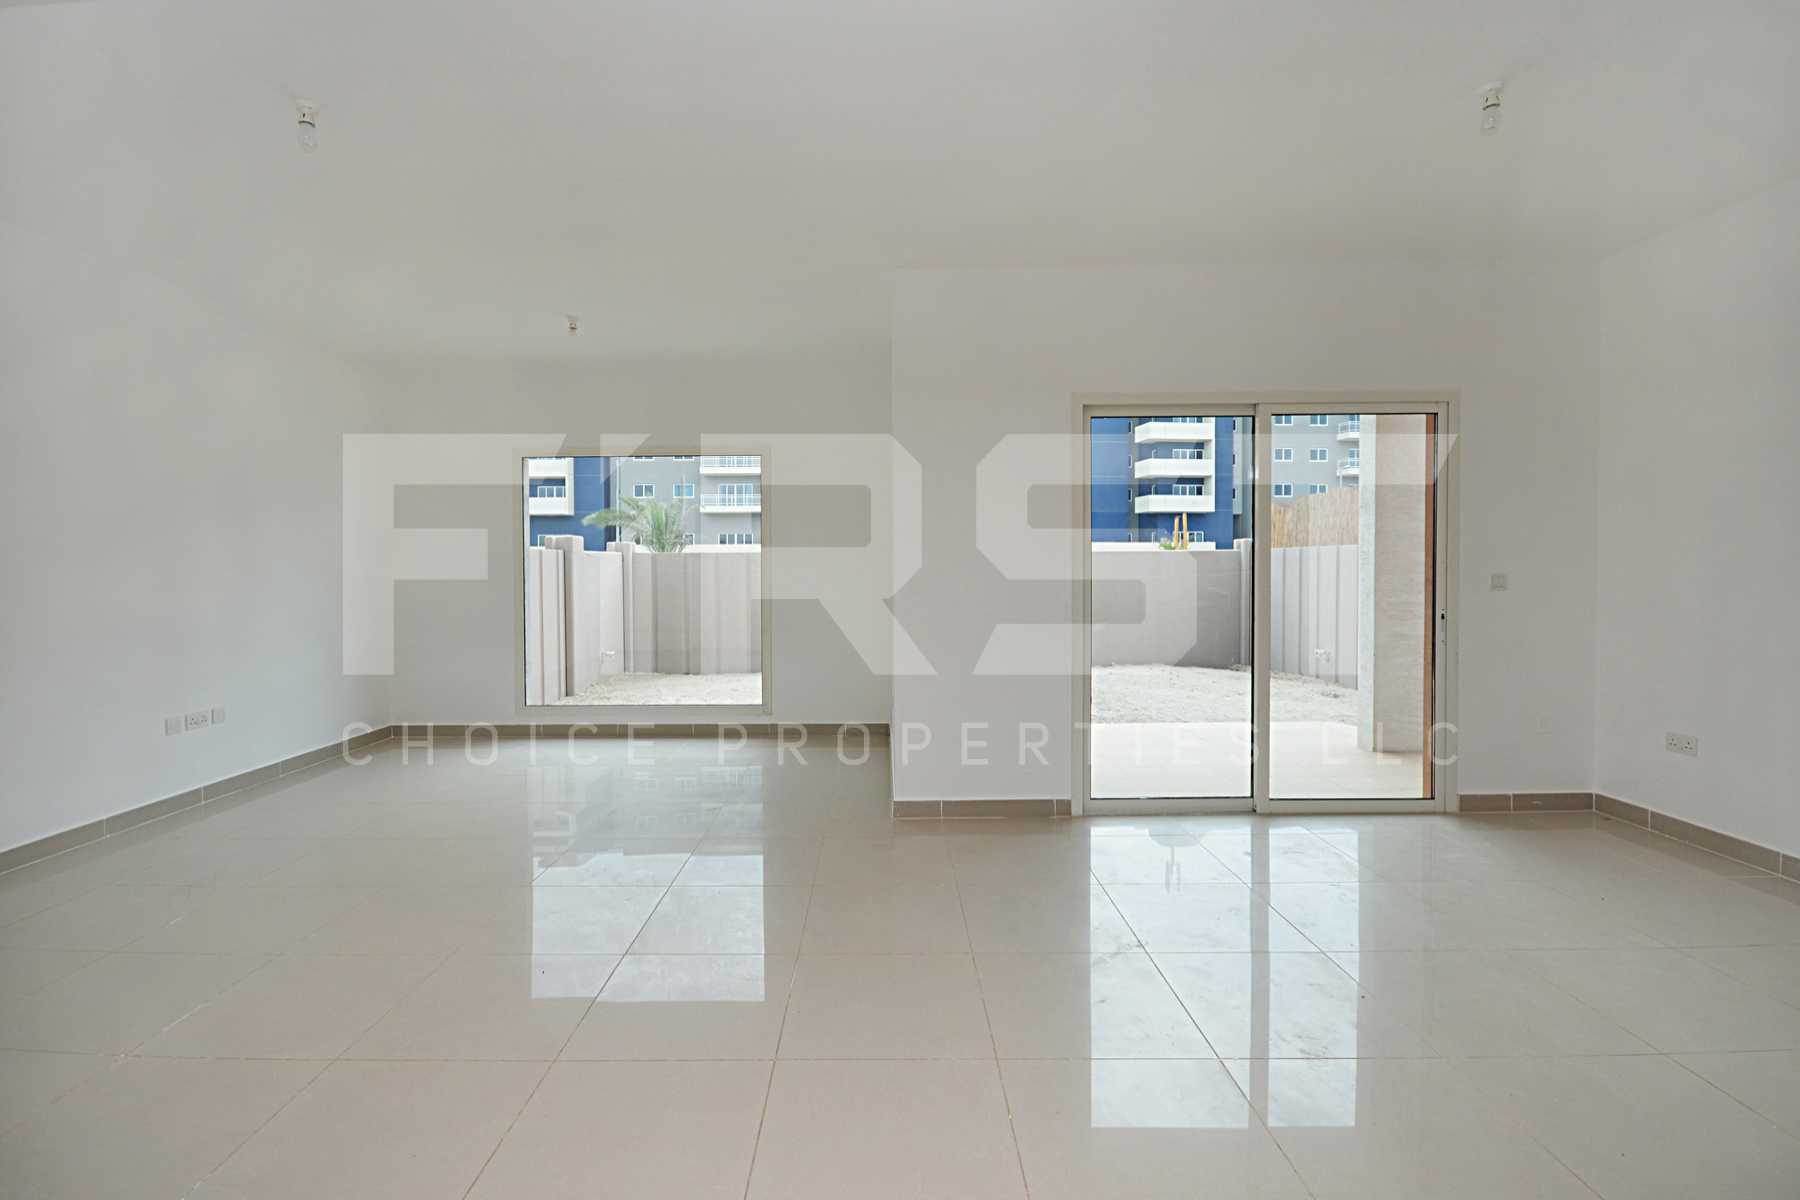 4 Bedroom Villa in Al Reef Villas Al Reef Abu Dhabi UAE 265.5 sq.m 2858 sq.ft (11).jpg